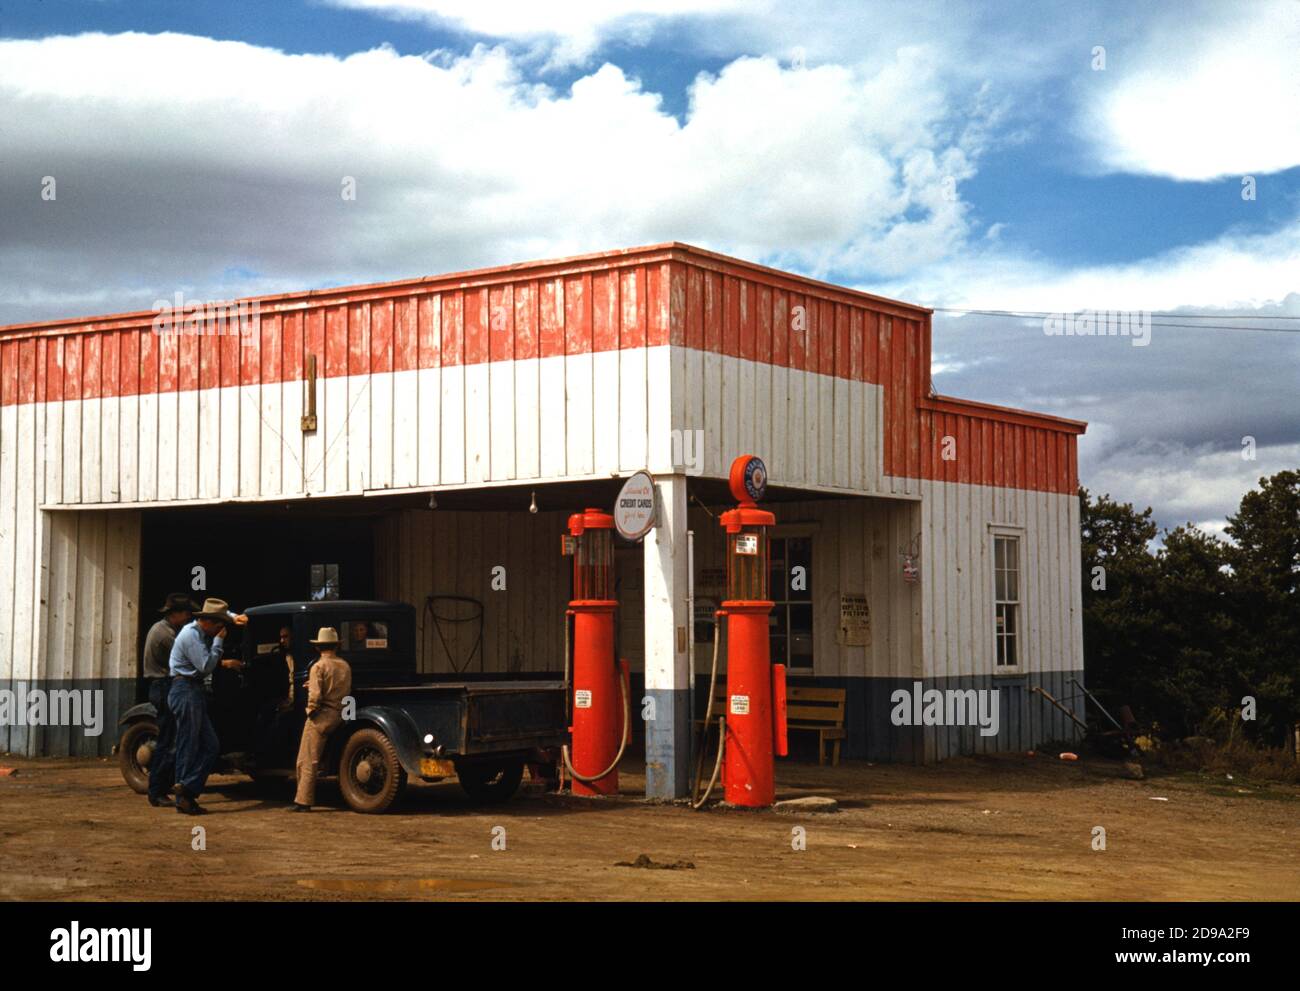 1940 , oktober , New Mexico , USA : Tankstelle und Garage in Pie Town, New Mexico . Foto von american Russell LEE ( geboren 1903 ) Für die UniRed angegeben US Office of war Information - Fotograf .- VEREINIGTE STAATEN - FOTO STORICHE - GESCHICHTE - GEOGRAFIA - GEOGRAPHIE - AGRICOLTURA - AGRICOLTORI - ALLEVATORI di BOVINI - ALLEVAMENTO BOVINO - KUH - Cowboy - CONTADINI - Rinder - Rodeos - ANNI QUARANTA - 1940er Jahre - 40er Jahre - '40 - campagna - Land - DISTRIBUTORE POMPE DI BENZINA - carburante - OFFICINA RIPARAZIONE MECCANICA - AUTOMOBIL - AUTO - Auto - furgone - Camion - VERTREIBER VON GASPUMPEN - Stockfoto